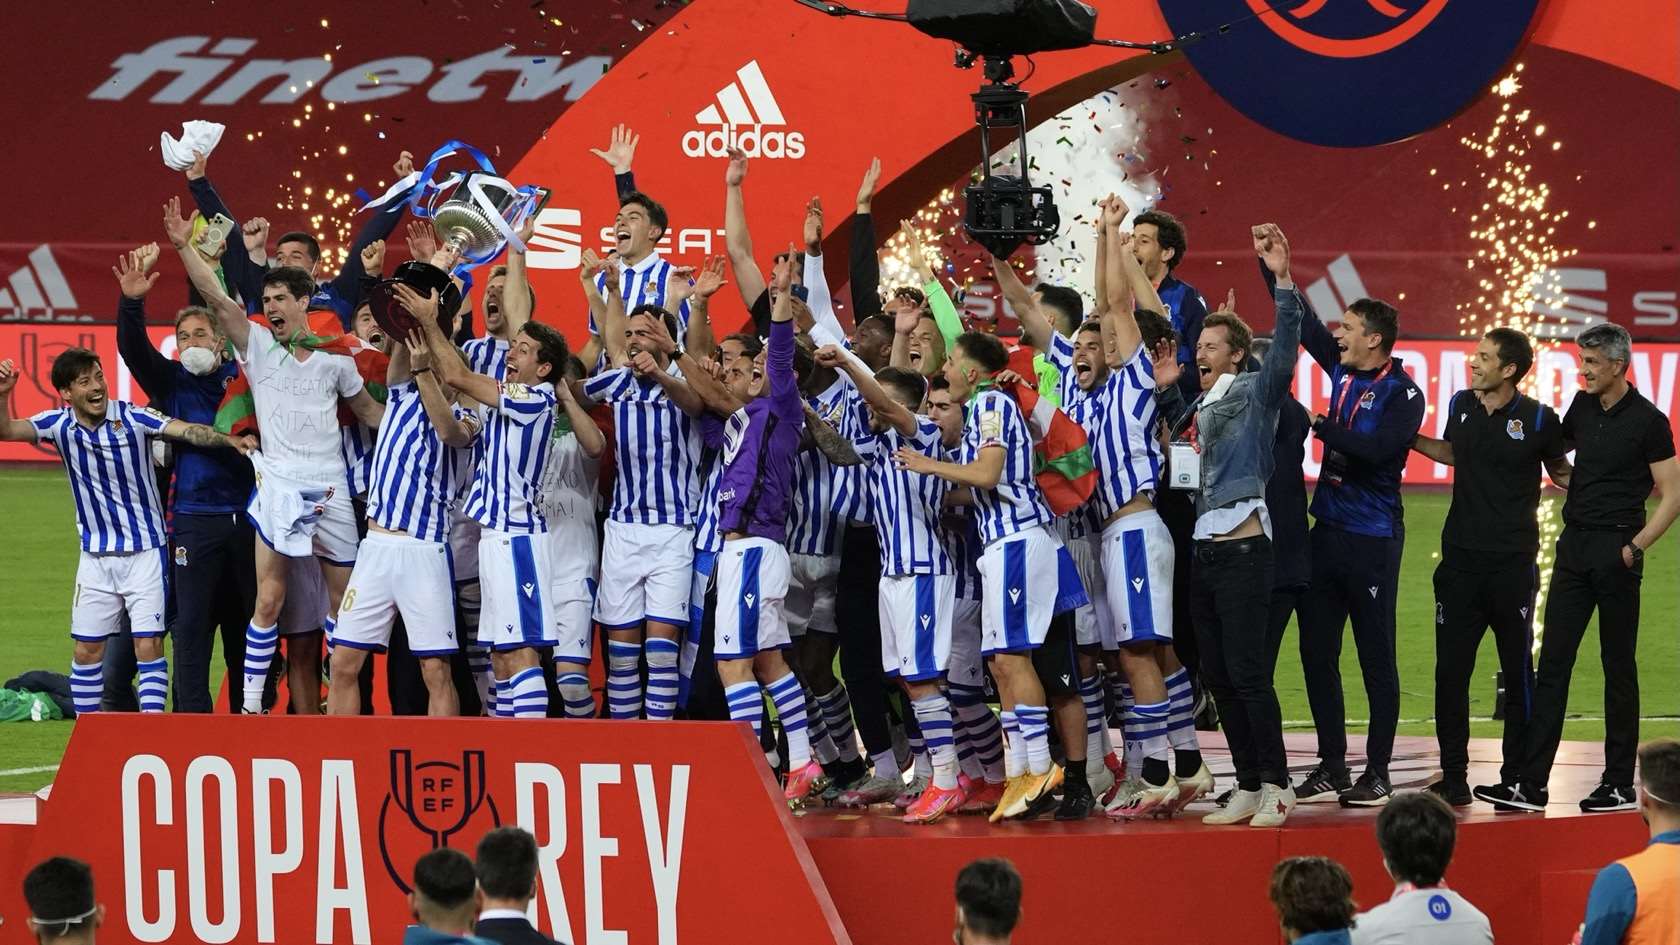 Copa del Rey Champions - Real Sociedad de Football .